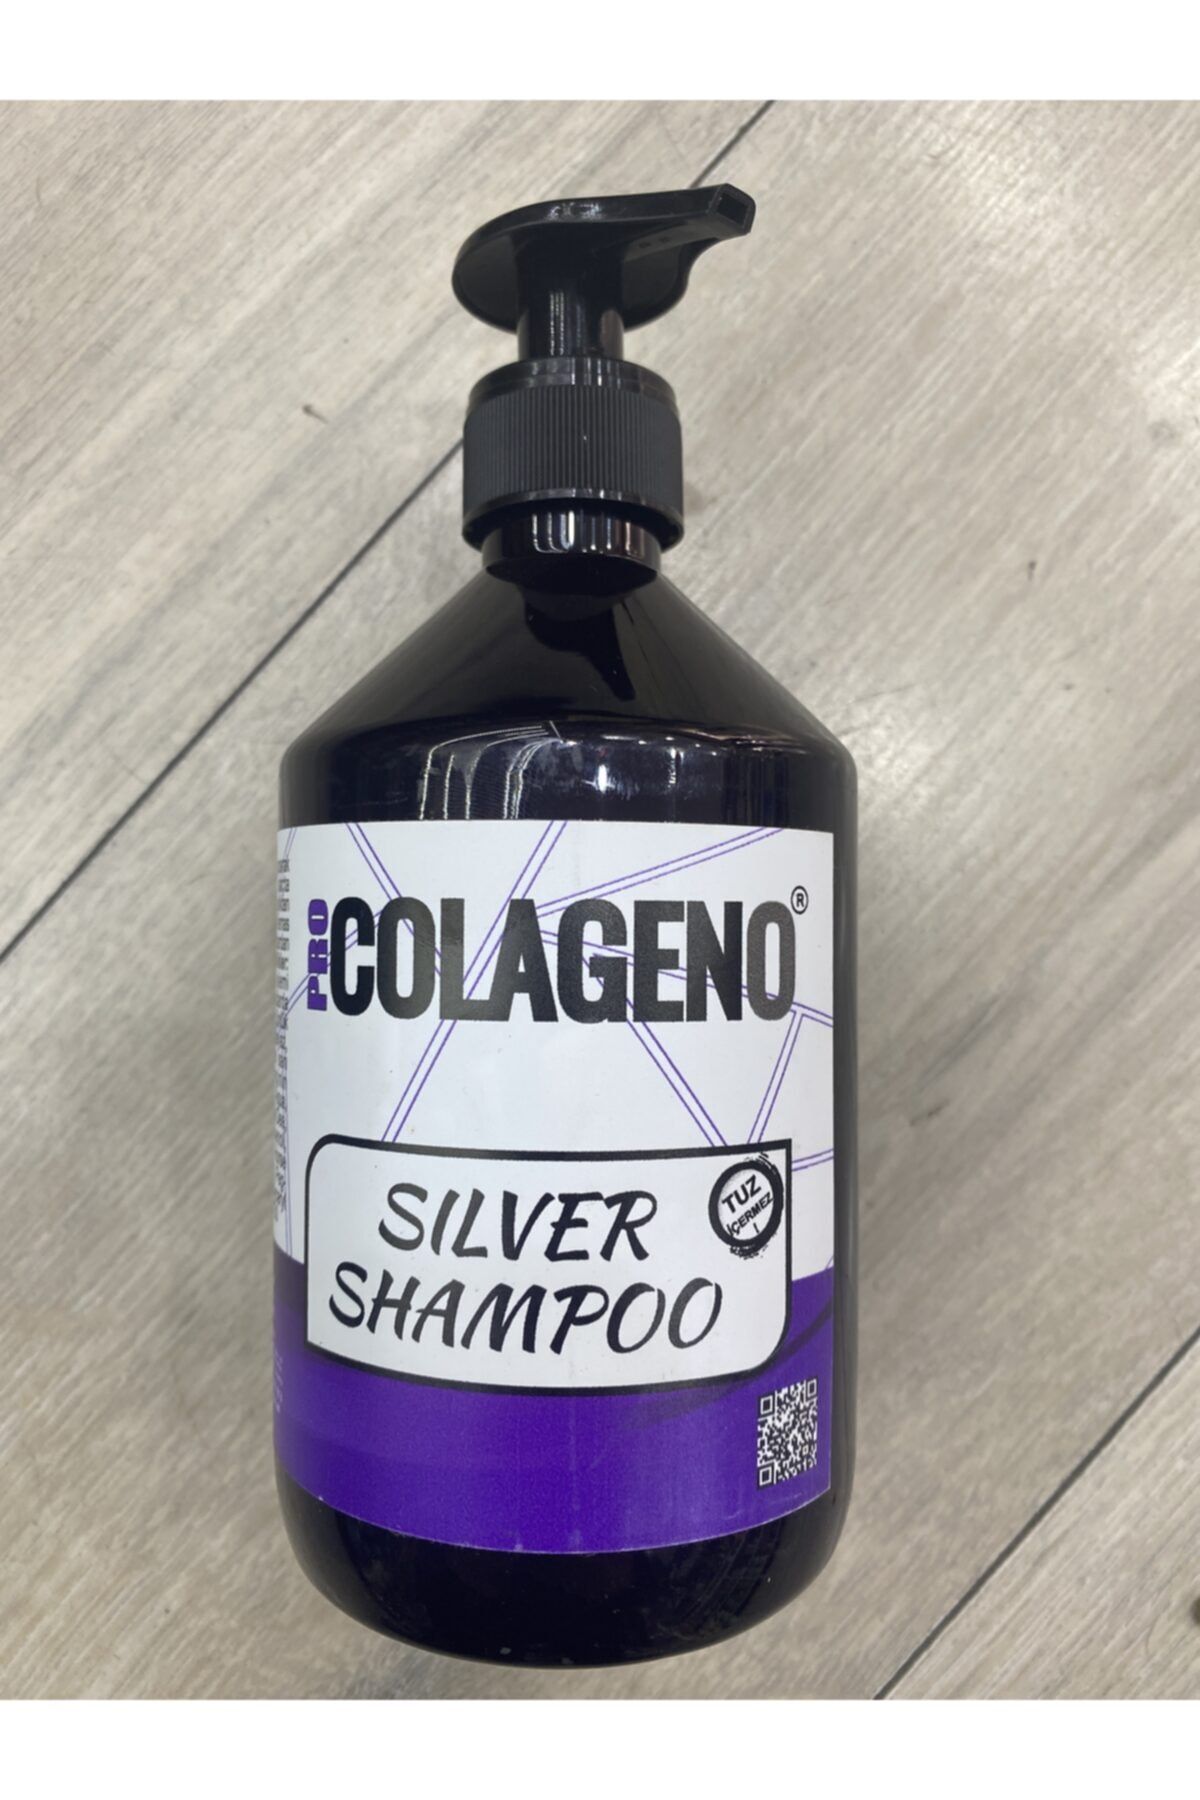 DELLA SERA Silver Şampuan 500ml Colageno Profesyonel